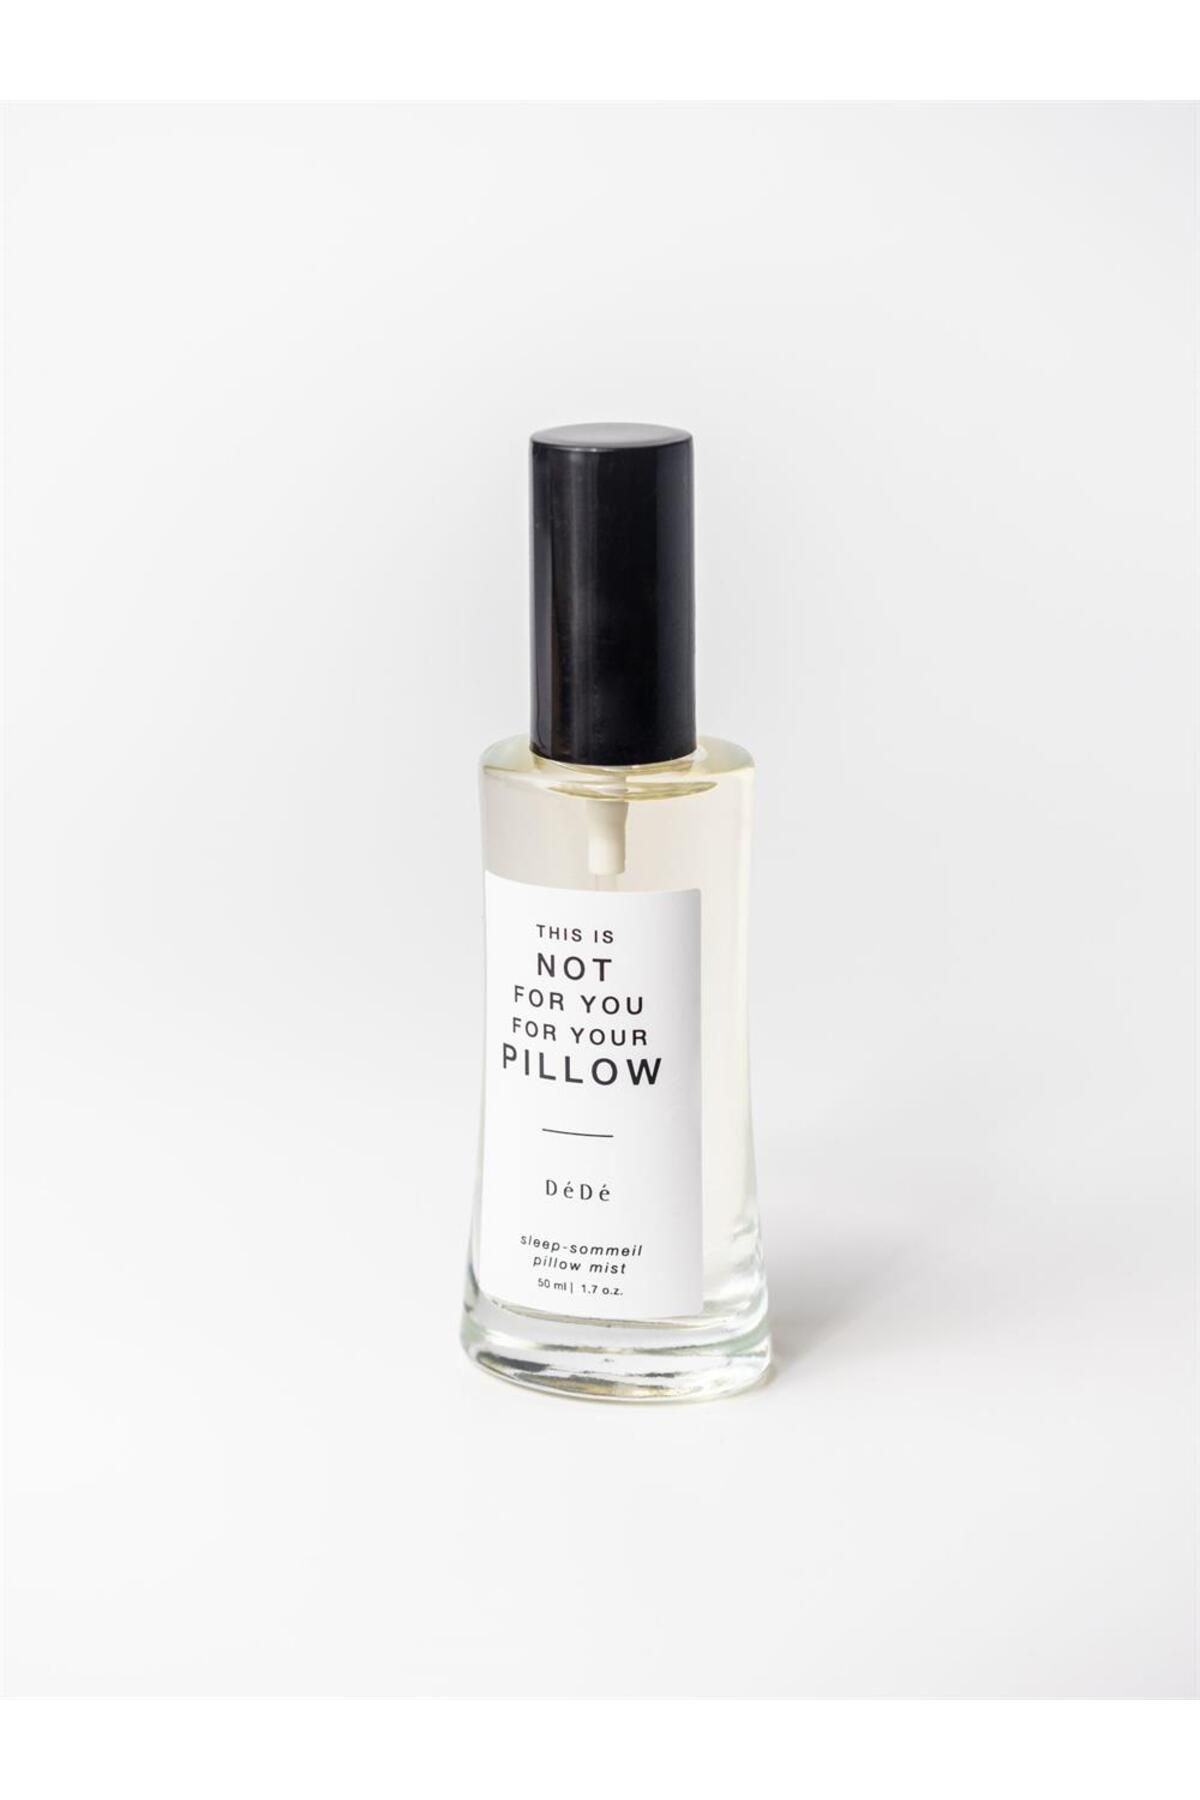 DEDE Sleep- Sommeil Yastık Misti | Pillow Perfume